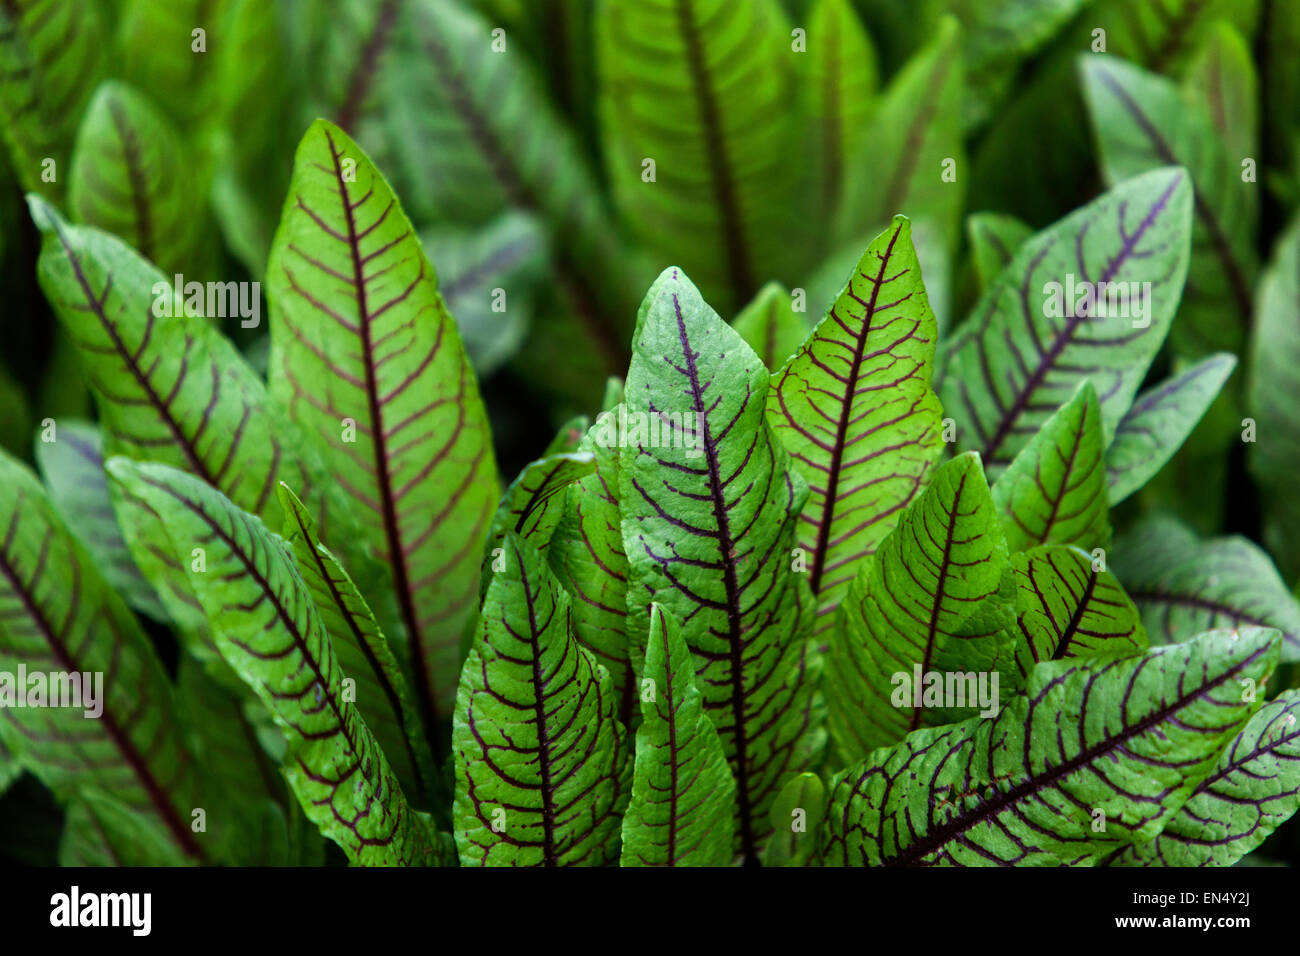 Quai sanglant, Rumex sanguineus feuilles savoureuses aux salades, herbes de jardin potager feuilles culinaires Sorrel rouge légumes de culture Banque D'Images